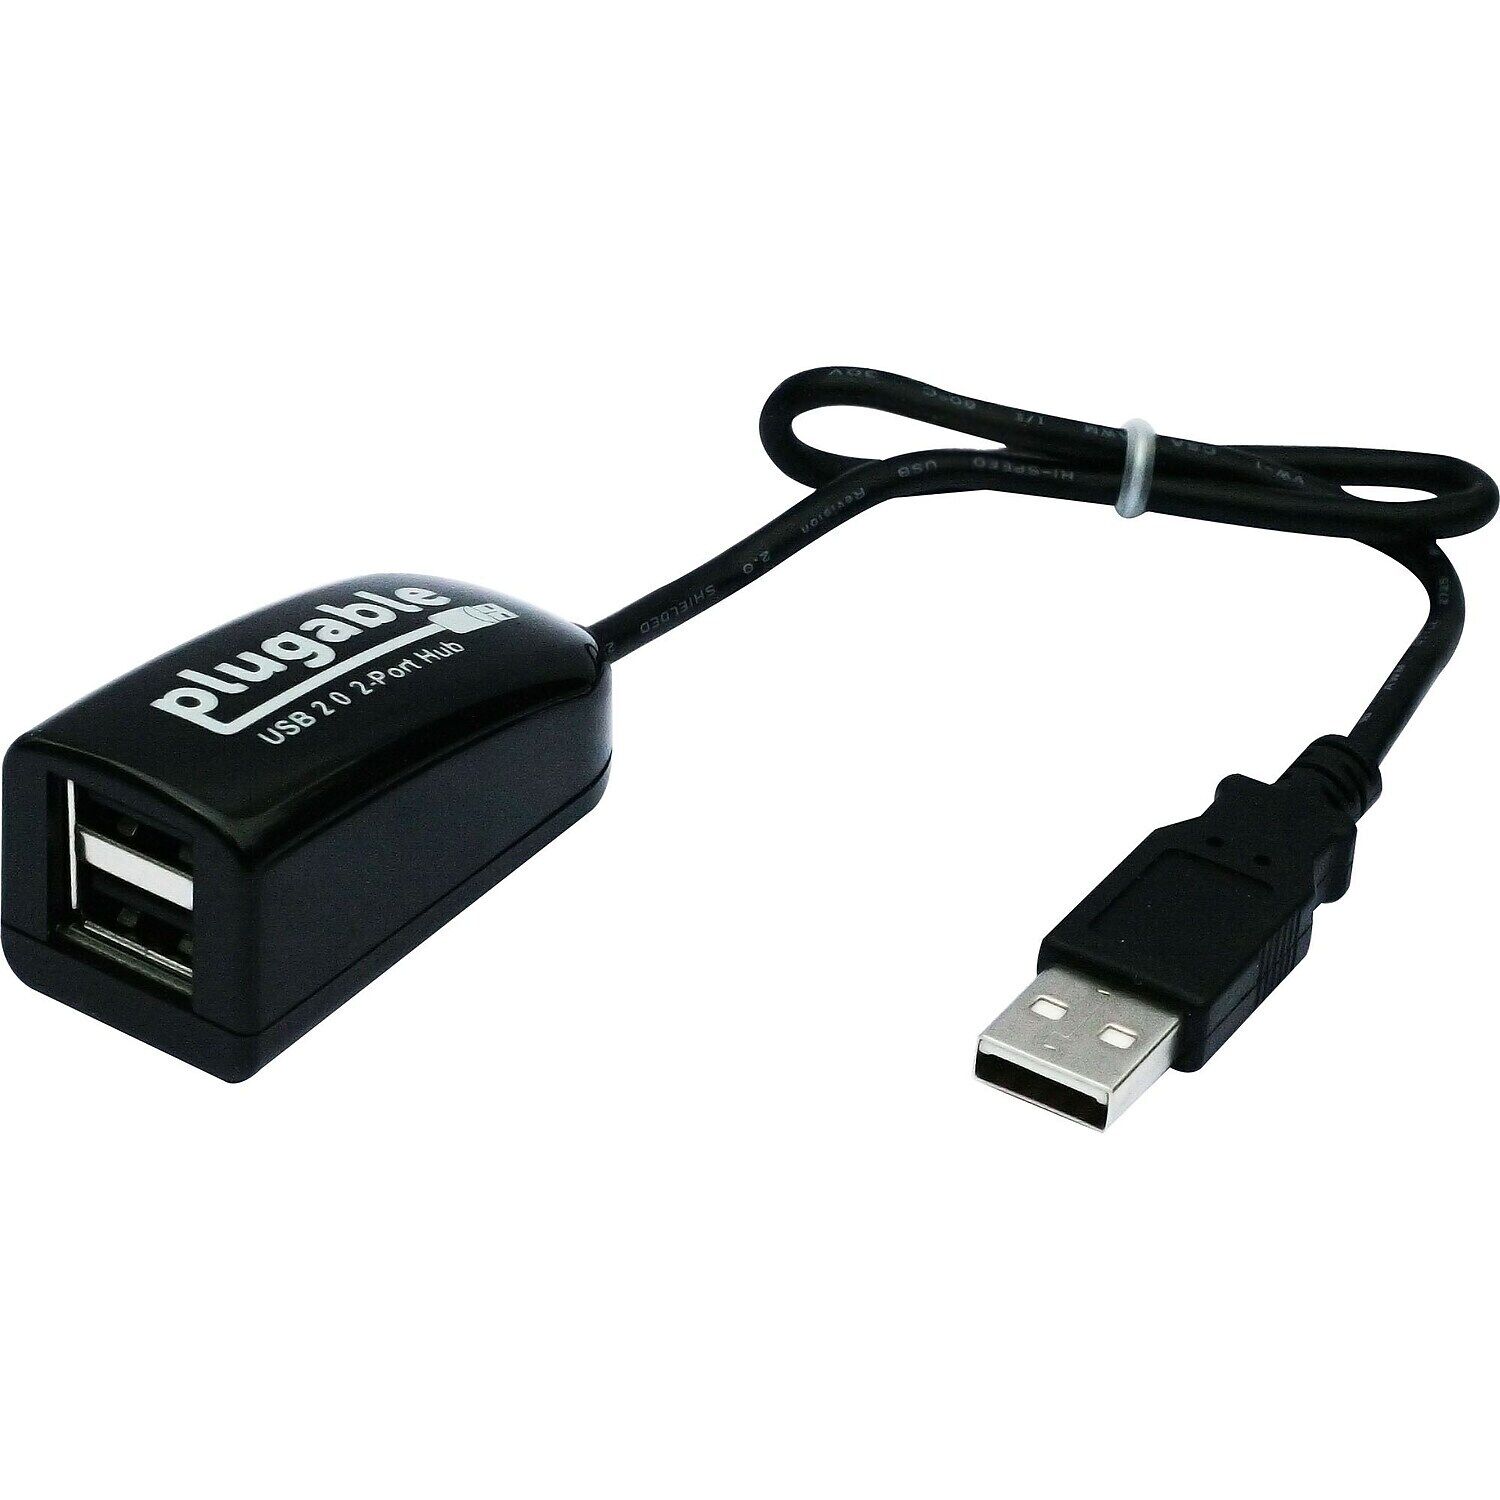 Plugable 2-Port USB 2.0 Hub/Splitter Black (USB2-2PORT)